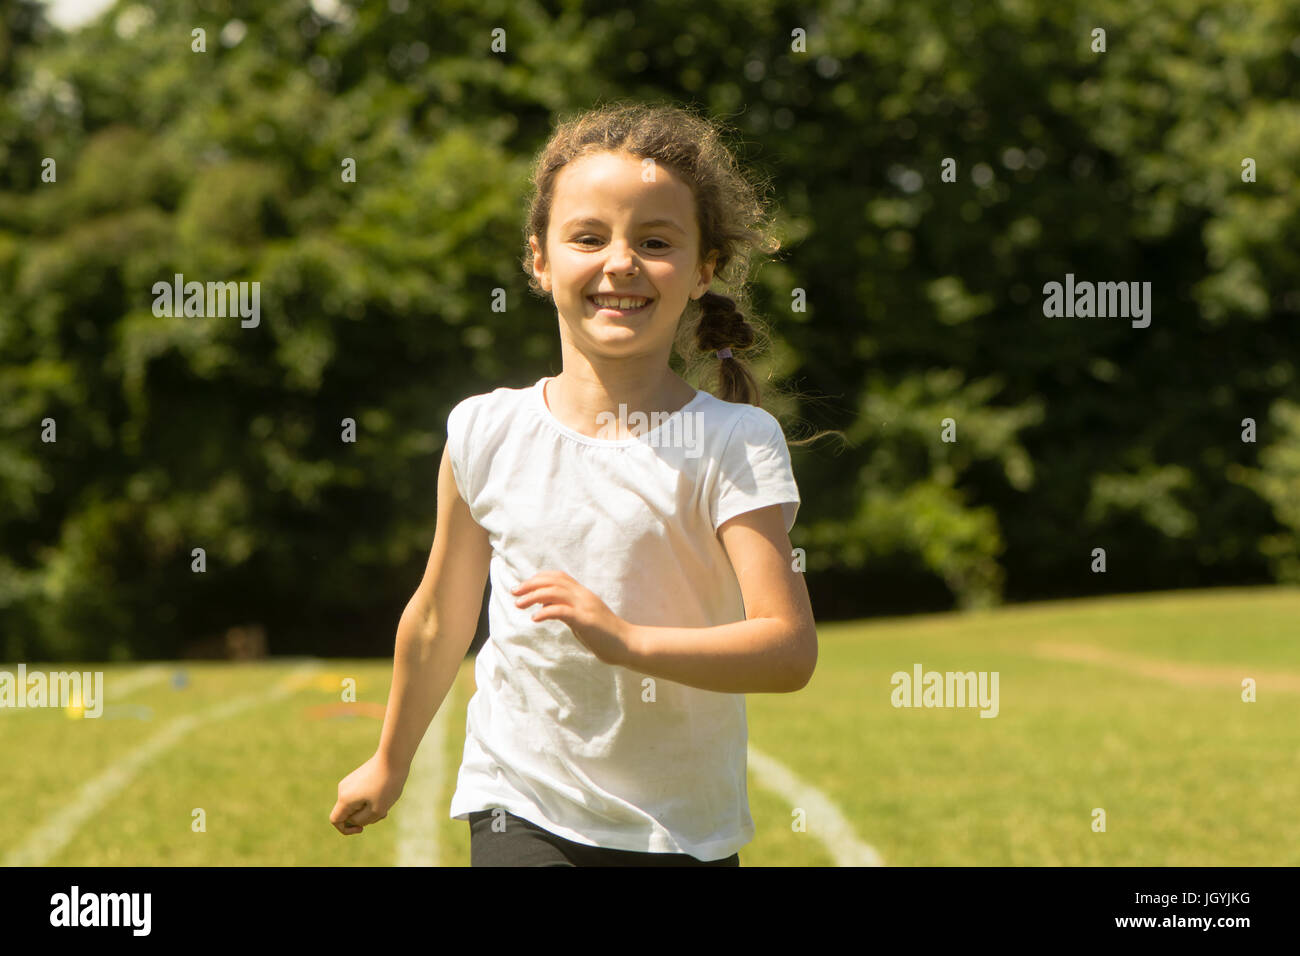 Mädchen am Schulsporttag laufen. Junges Kind sprinten hart und glücklich während der traditionellen Schule Sommerevent Stockfoto